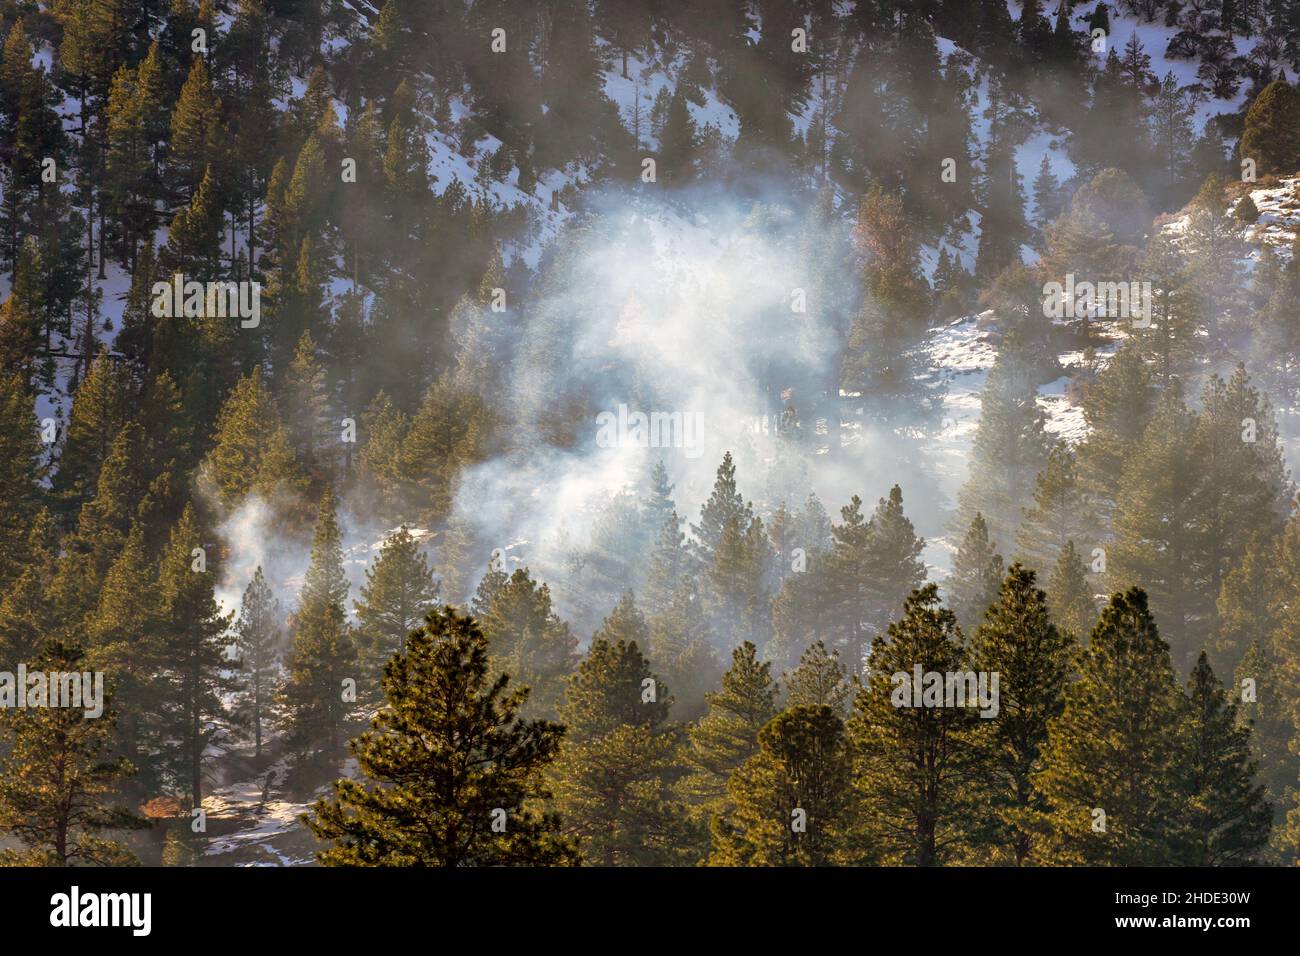 El humo que se levanta de una quemadura controlada en el bosque cubierto de nieve de las montañas de Sierra Nevada durante el invierno Foto de stock